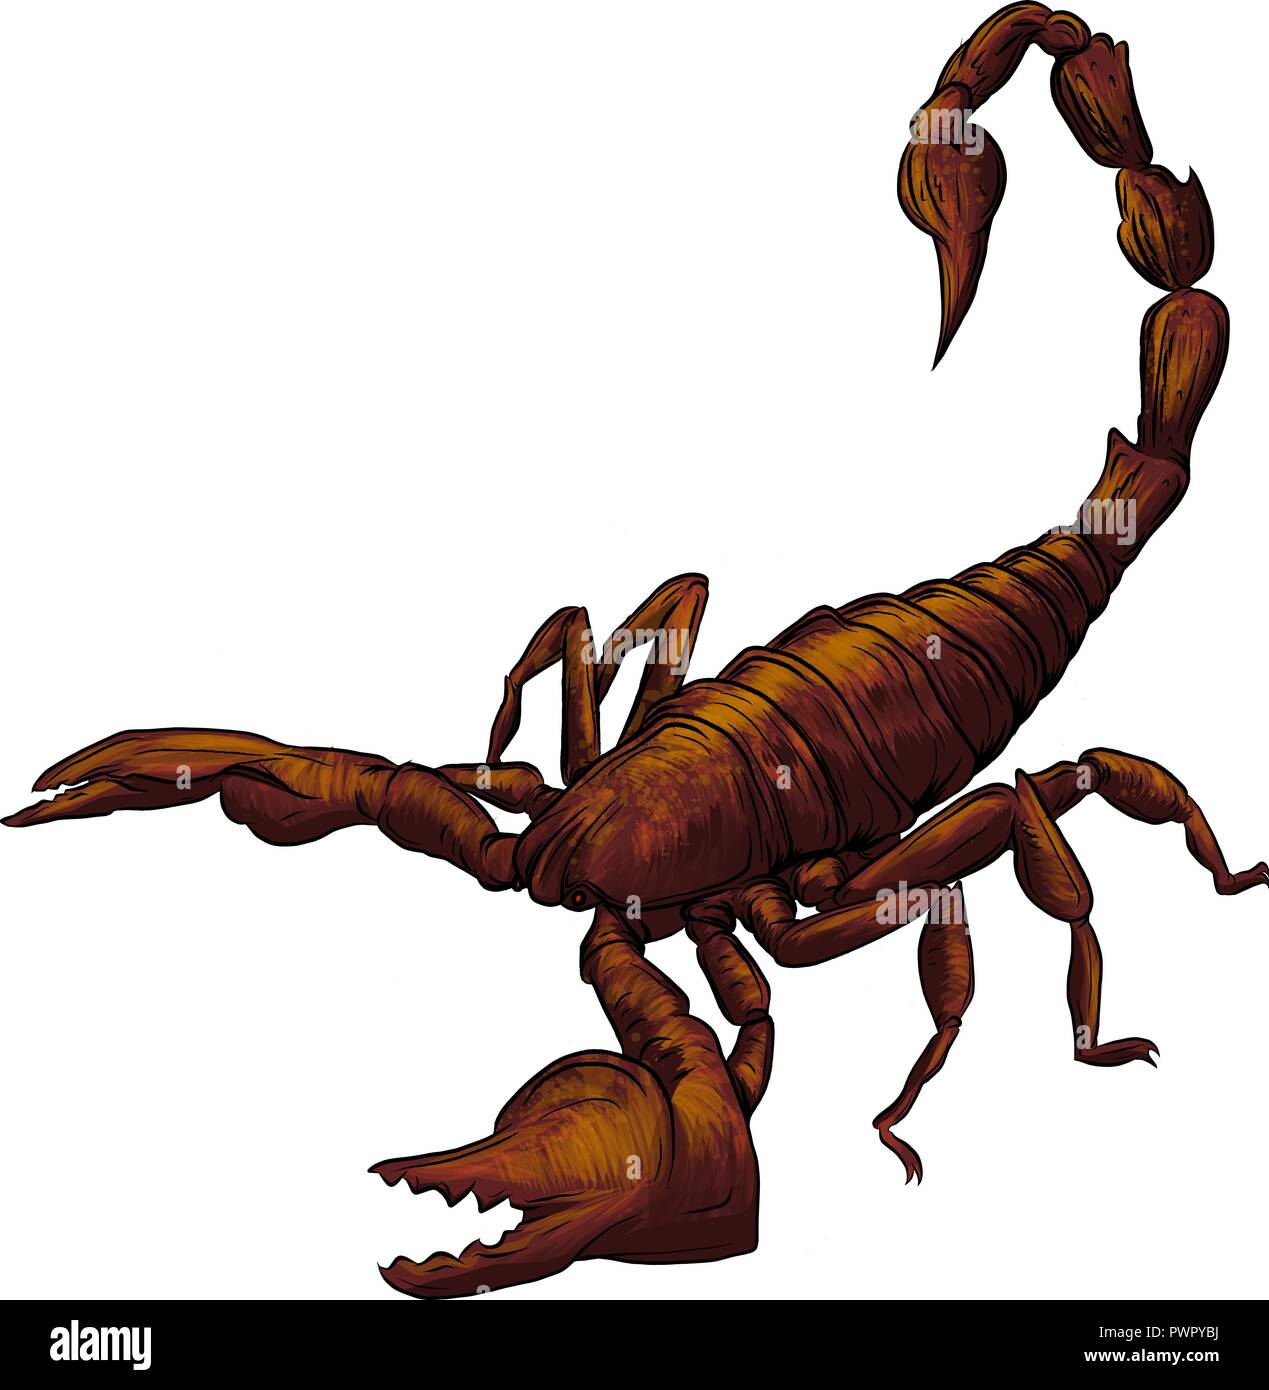 Vector cartoon scorpion réaliste illustration de fond blanc Illustration de Vecteur